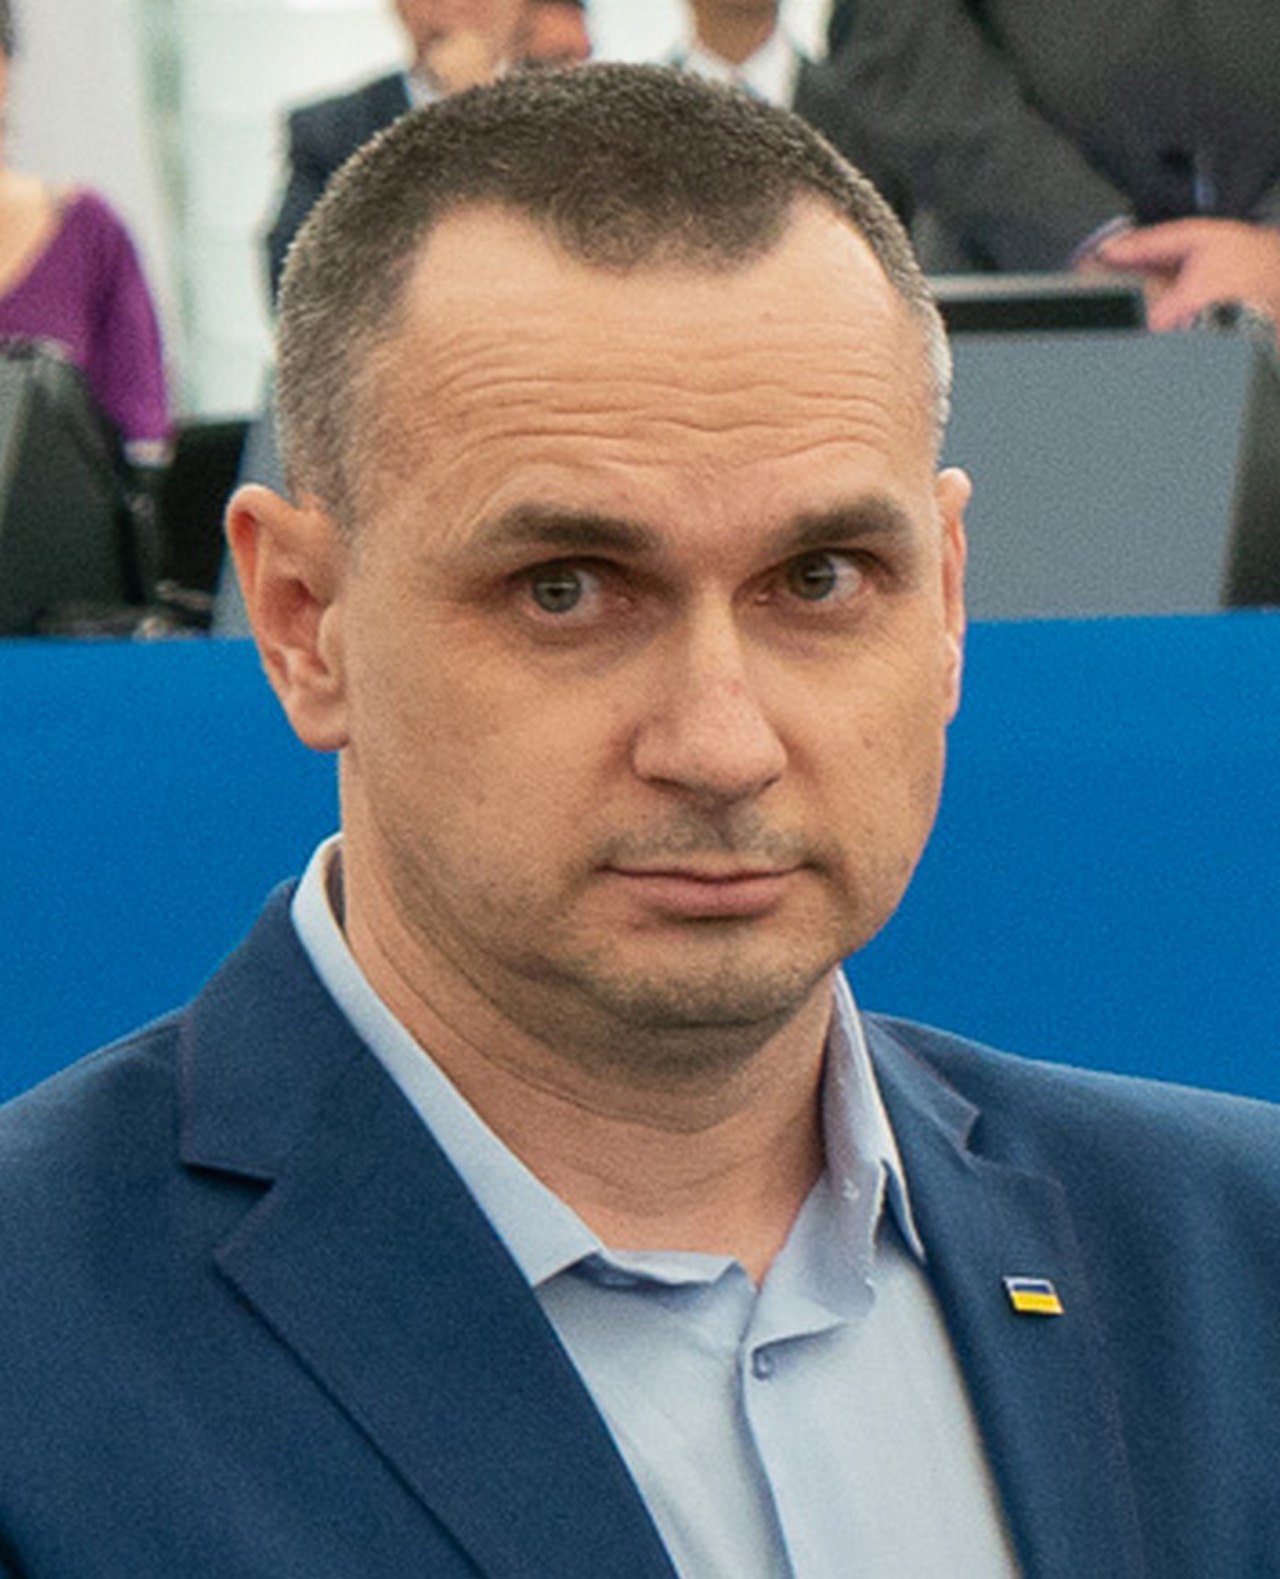 В августе 2015 года О. Сенцов приговорён к 20 годам колонии строгого режима по обвинению в организации диверсионной группы, а 7 сентября 2019 года был освобождён в рамках обмена удерживаемыми лицами между Россией и Украиной.